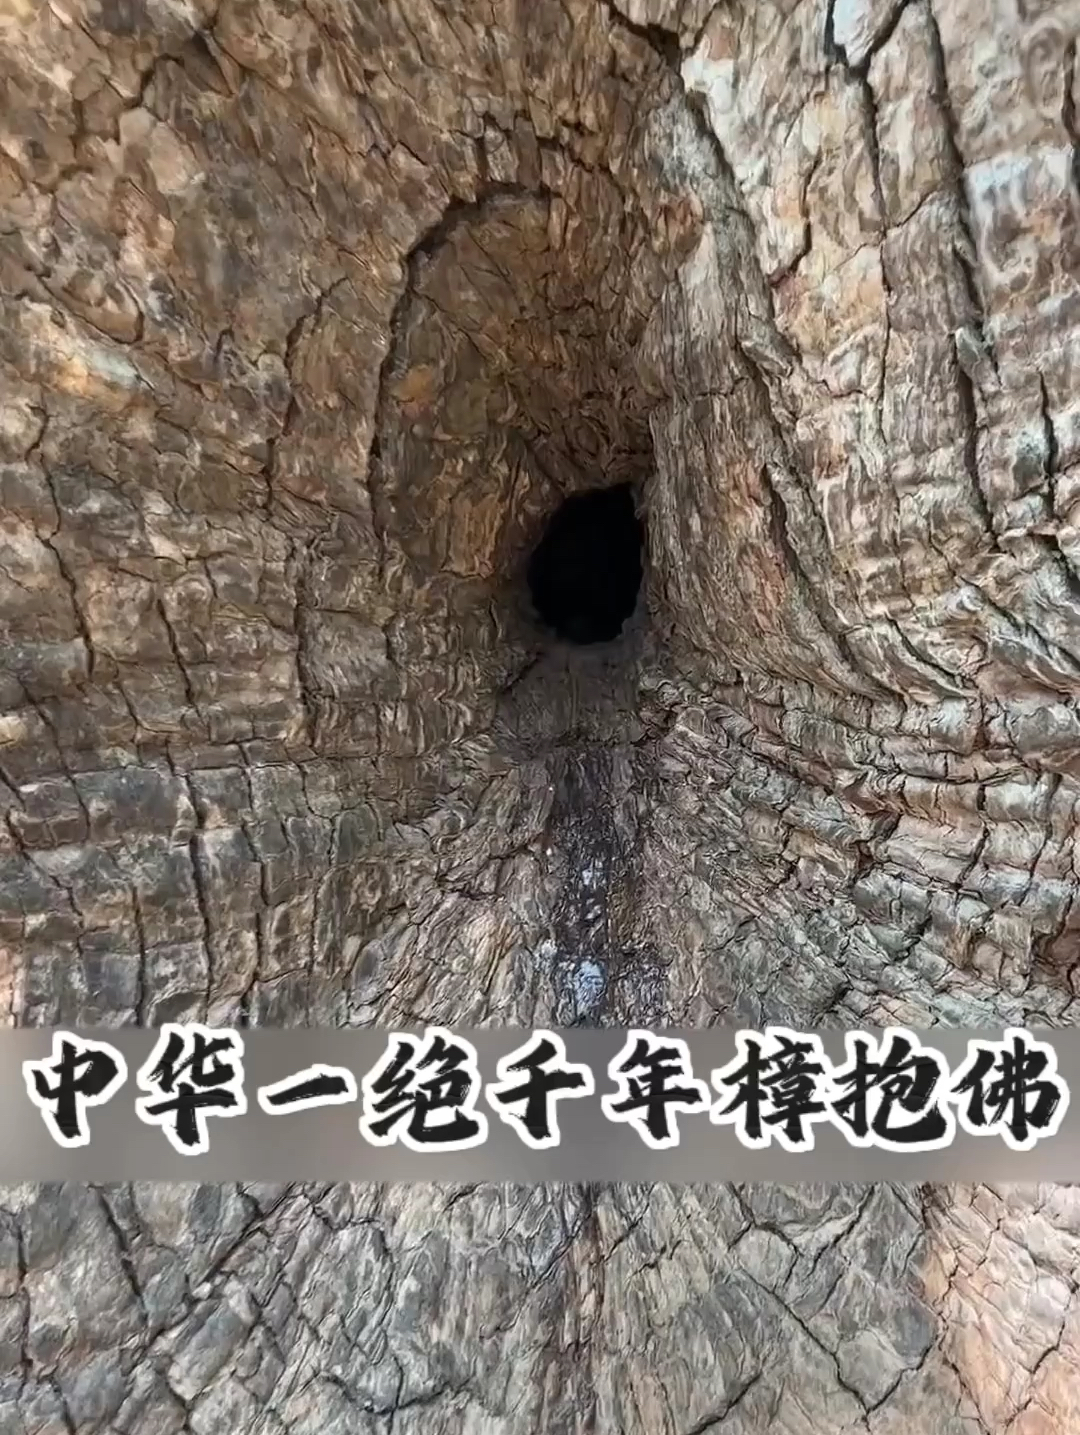 千年樟树的中间居然有一尊佛像，只能通过洞口才能看见，被誉为世界奇观，很多人都不远万里慕名前来观看  